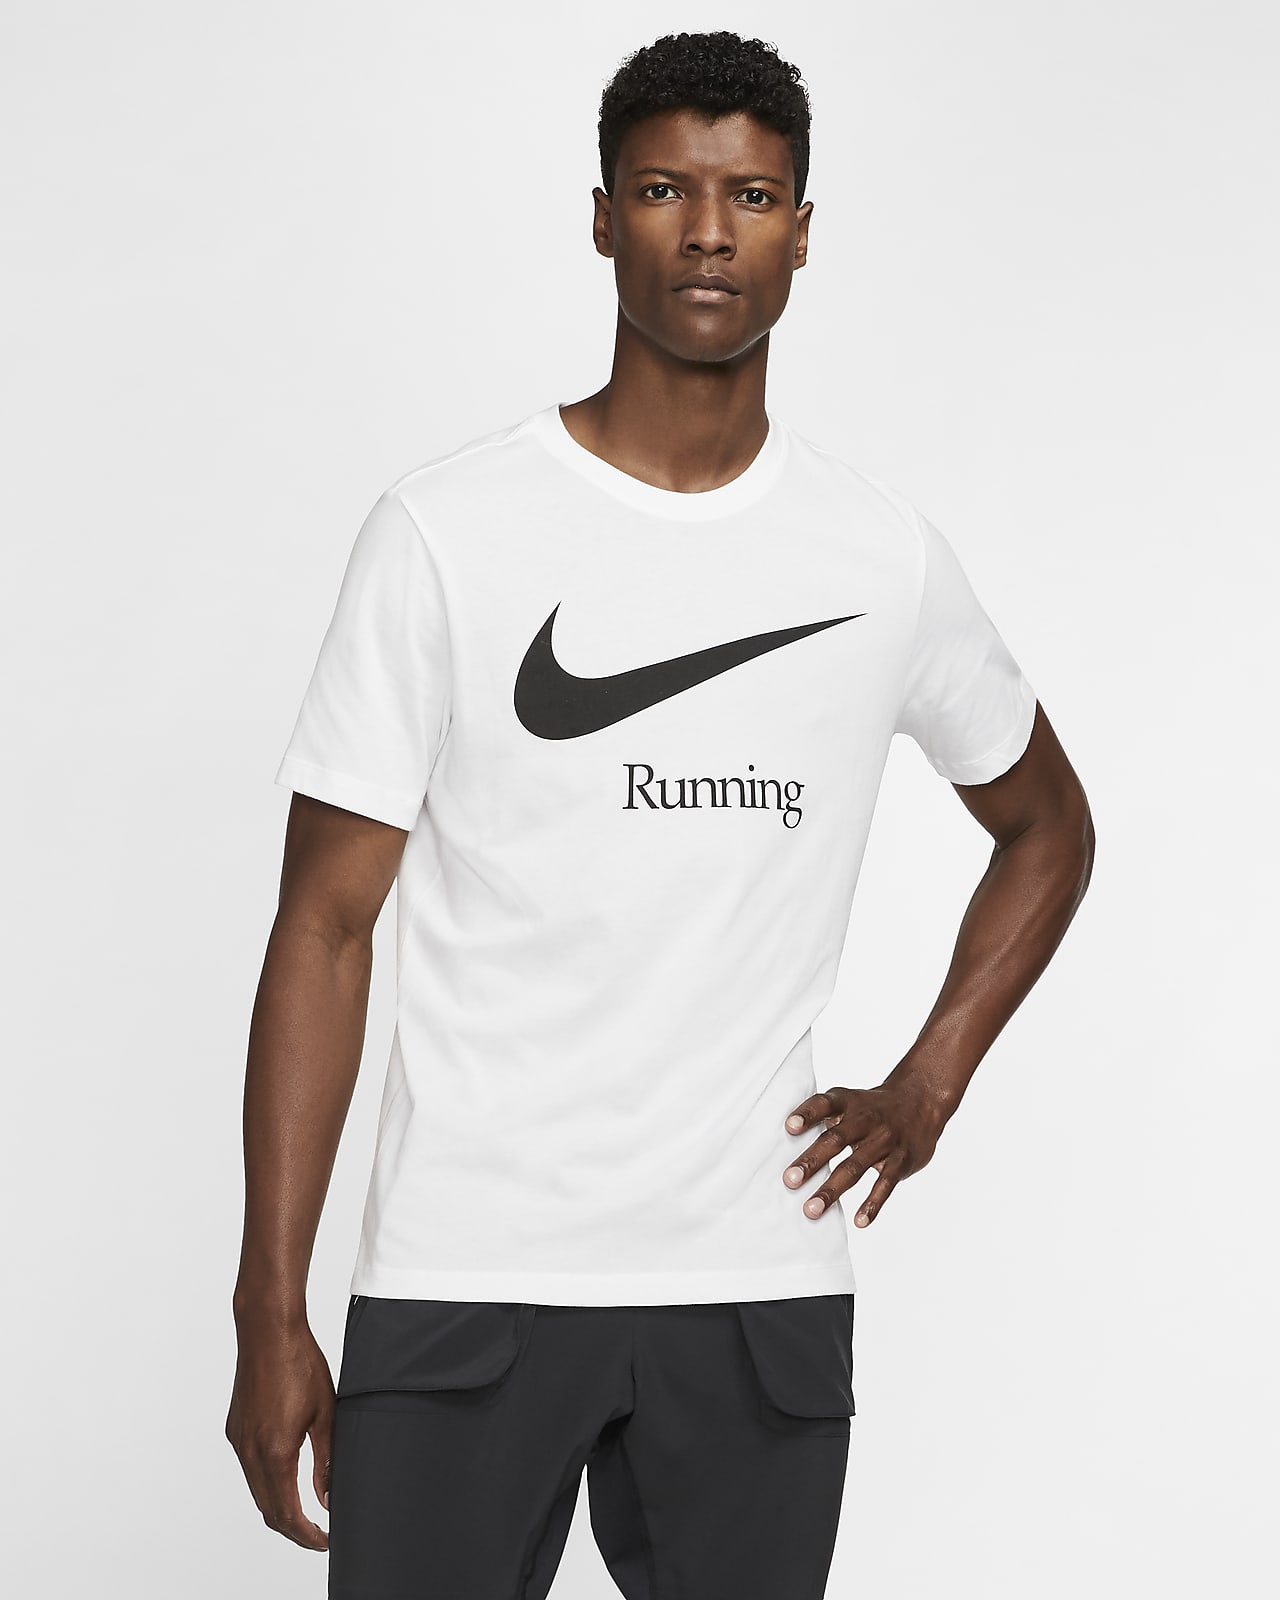 nike running t shirt